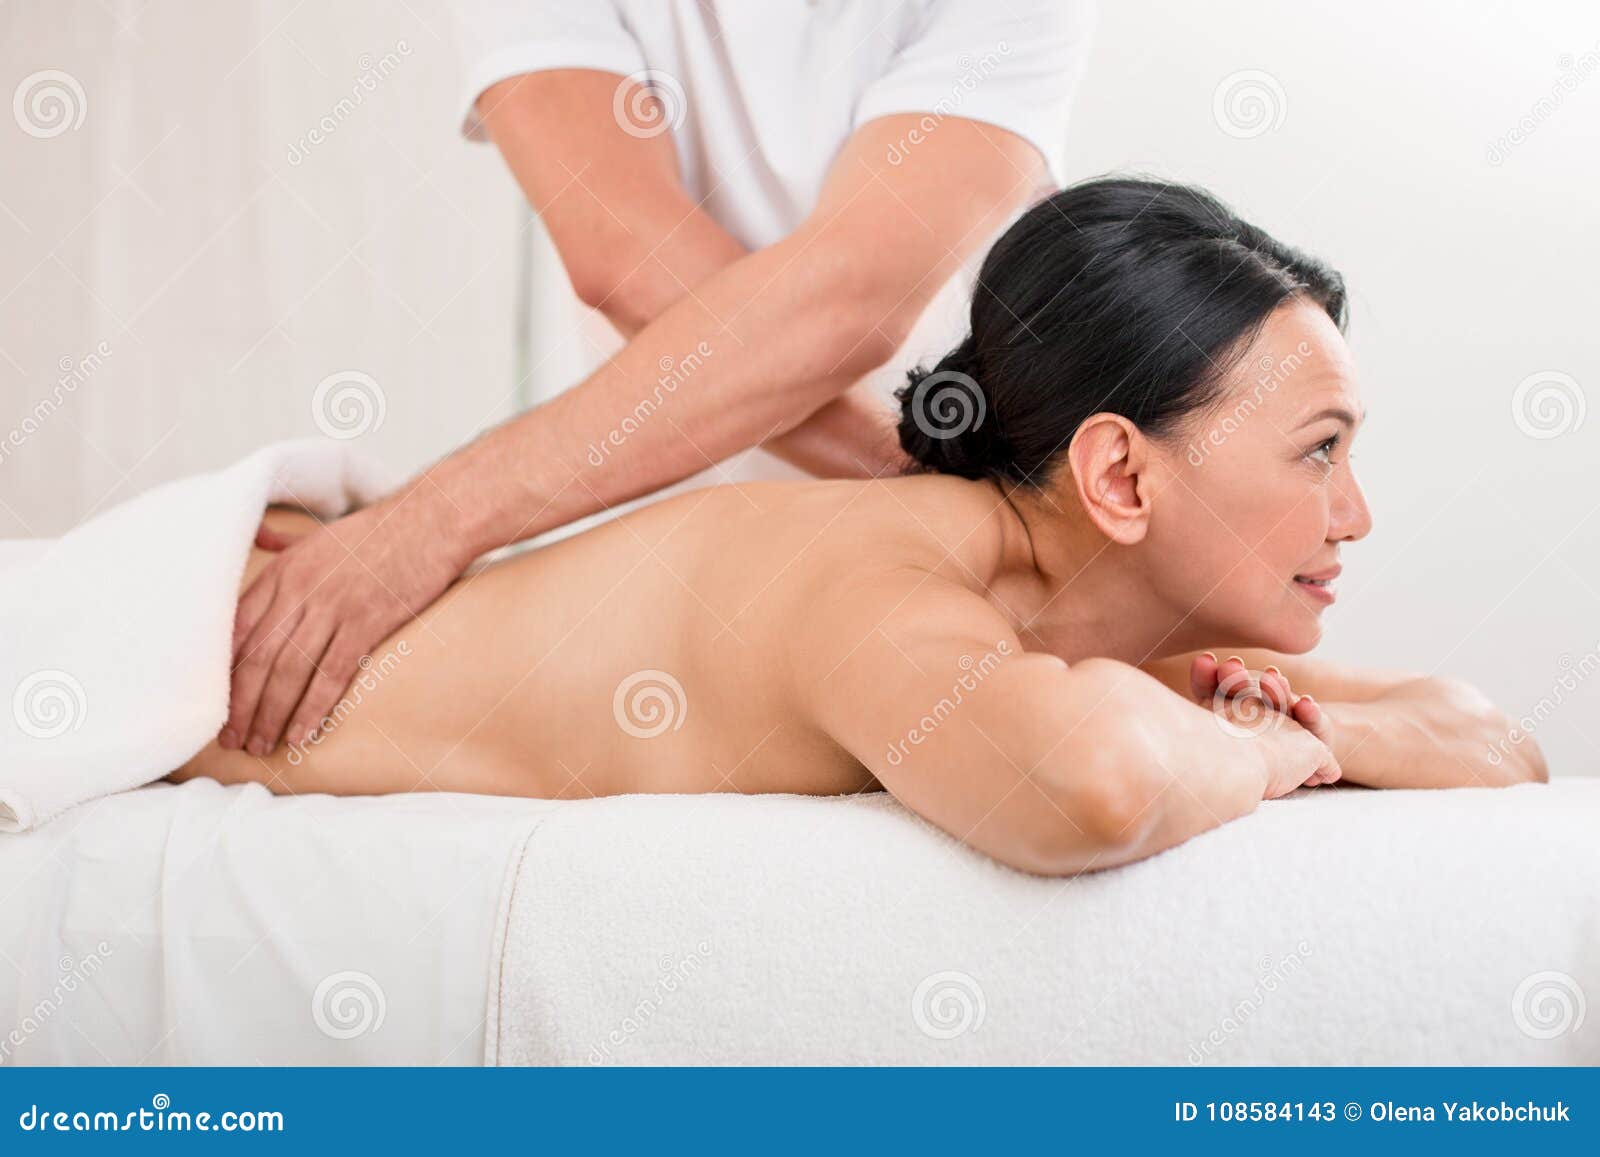 Asian mature woman massage